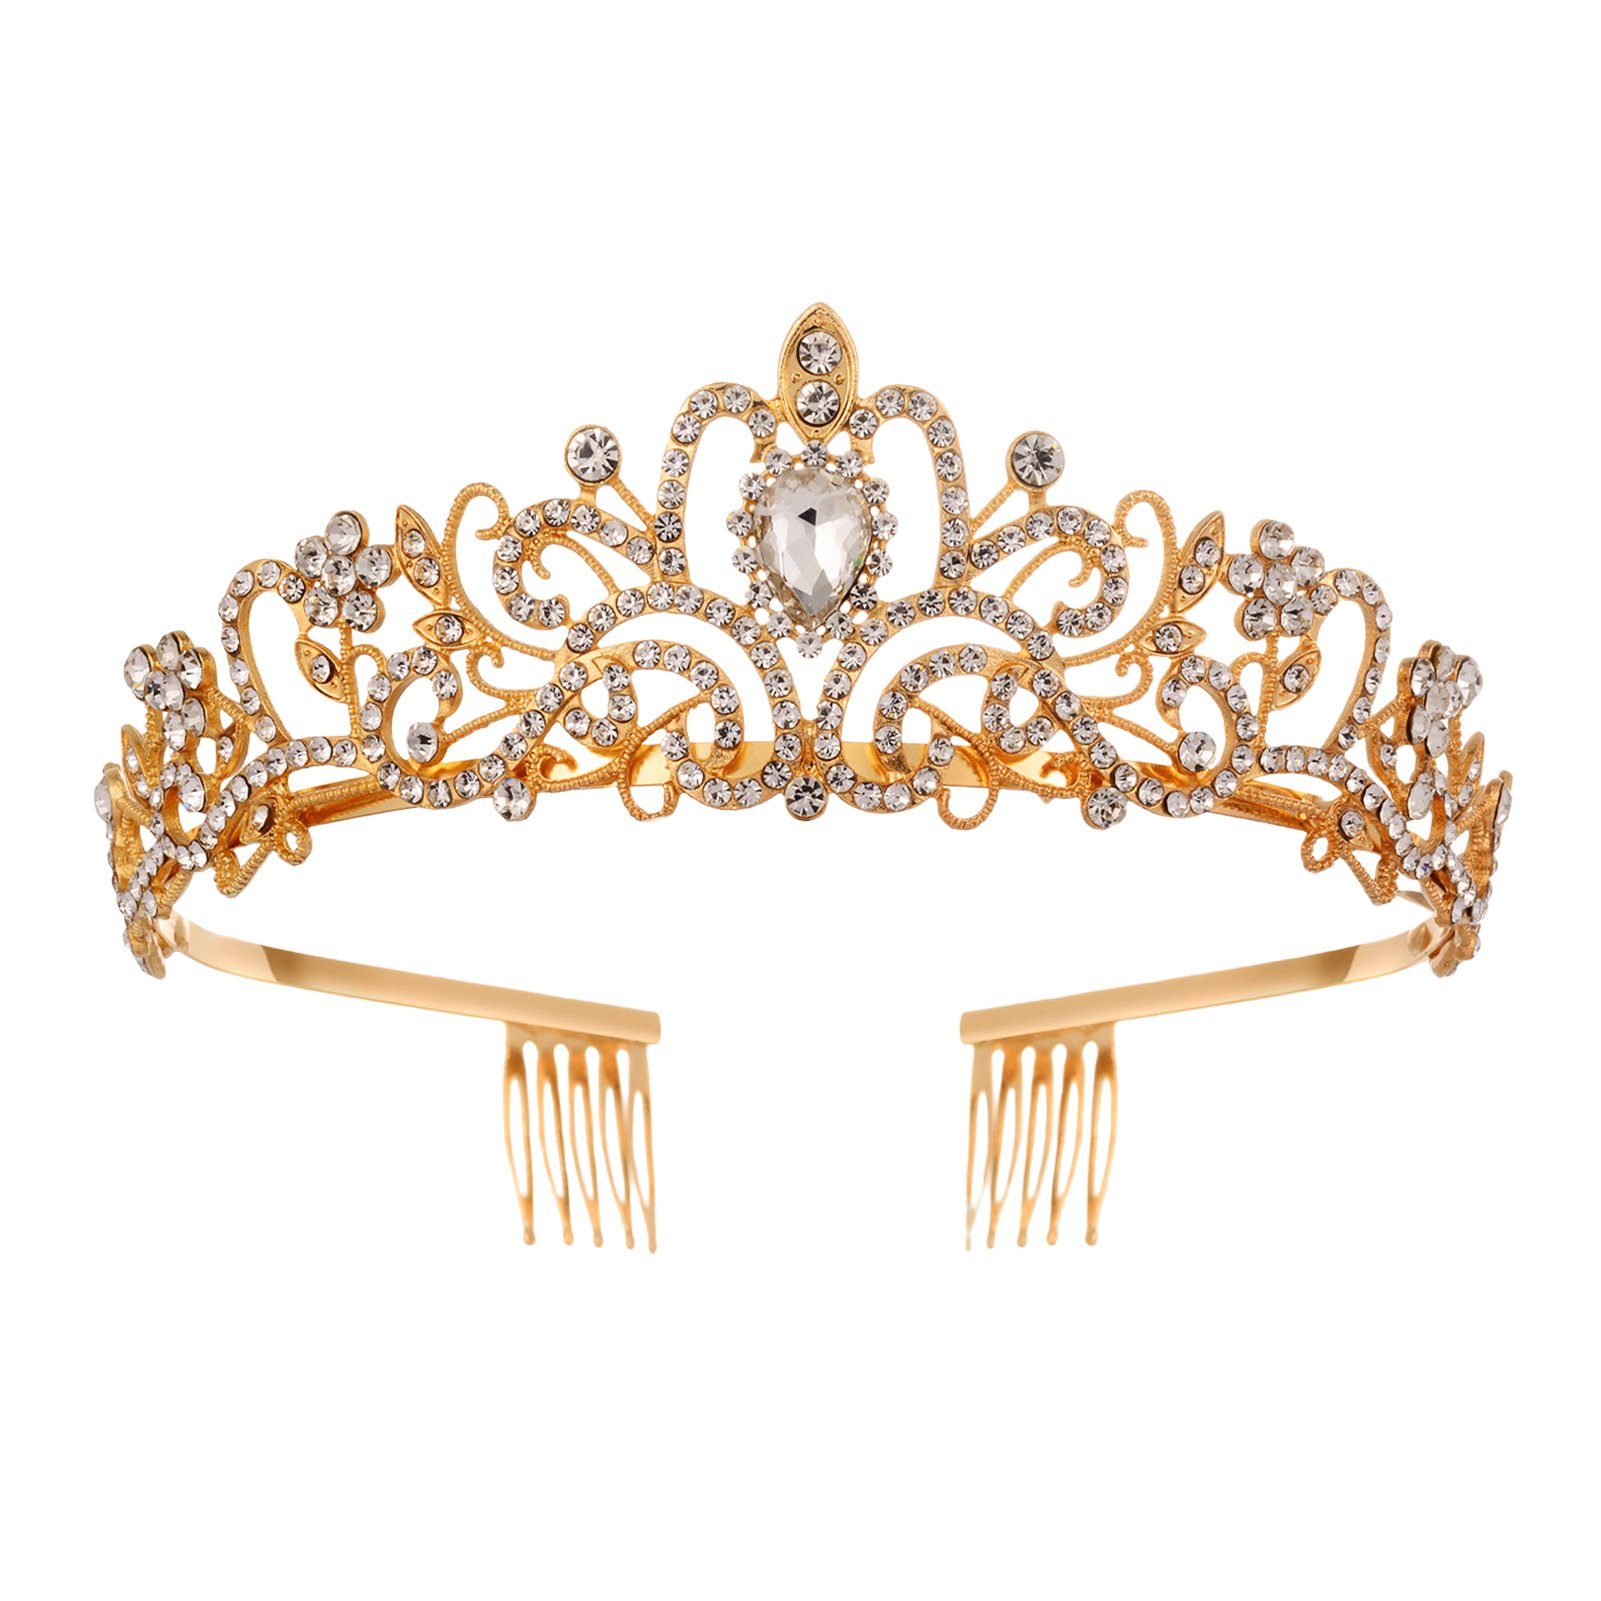 Blusmart Haarband Leichte, Luxuriöse Strass-Kronen-Tiaras Haarband Für Haarschmuck, golden Hochzeit